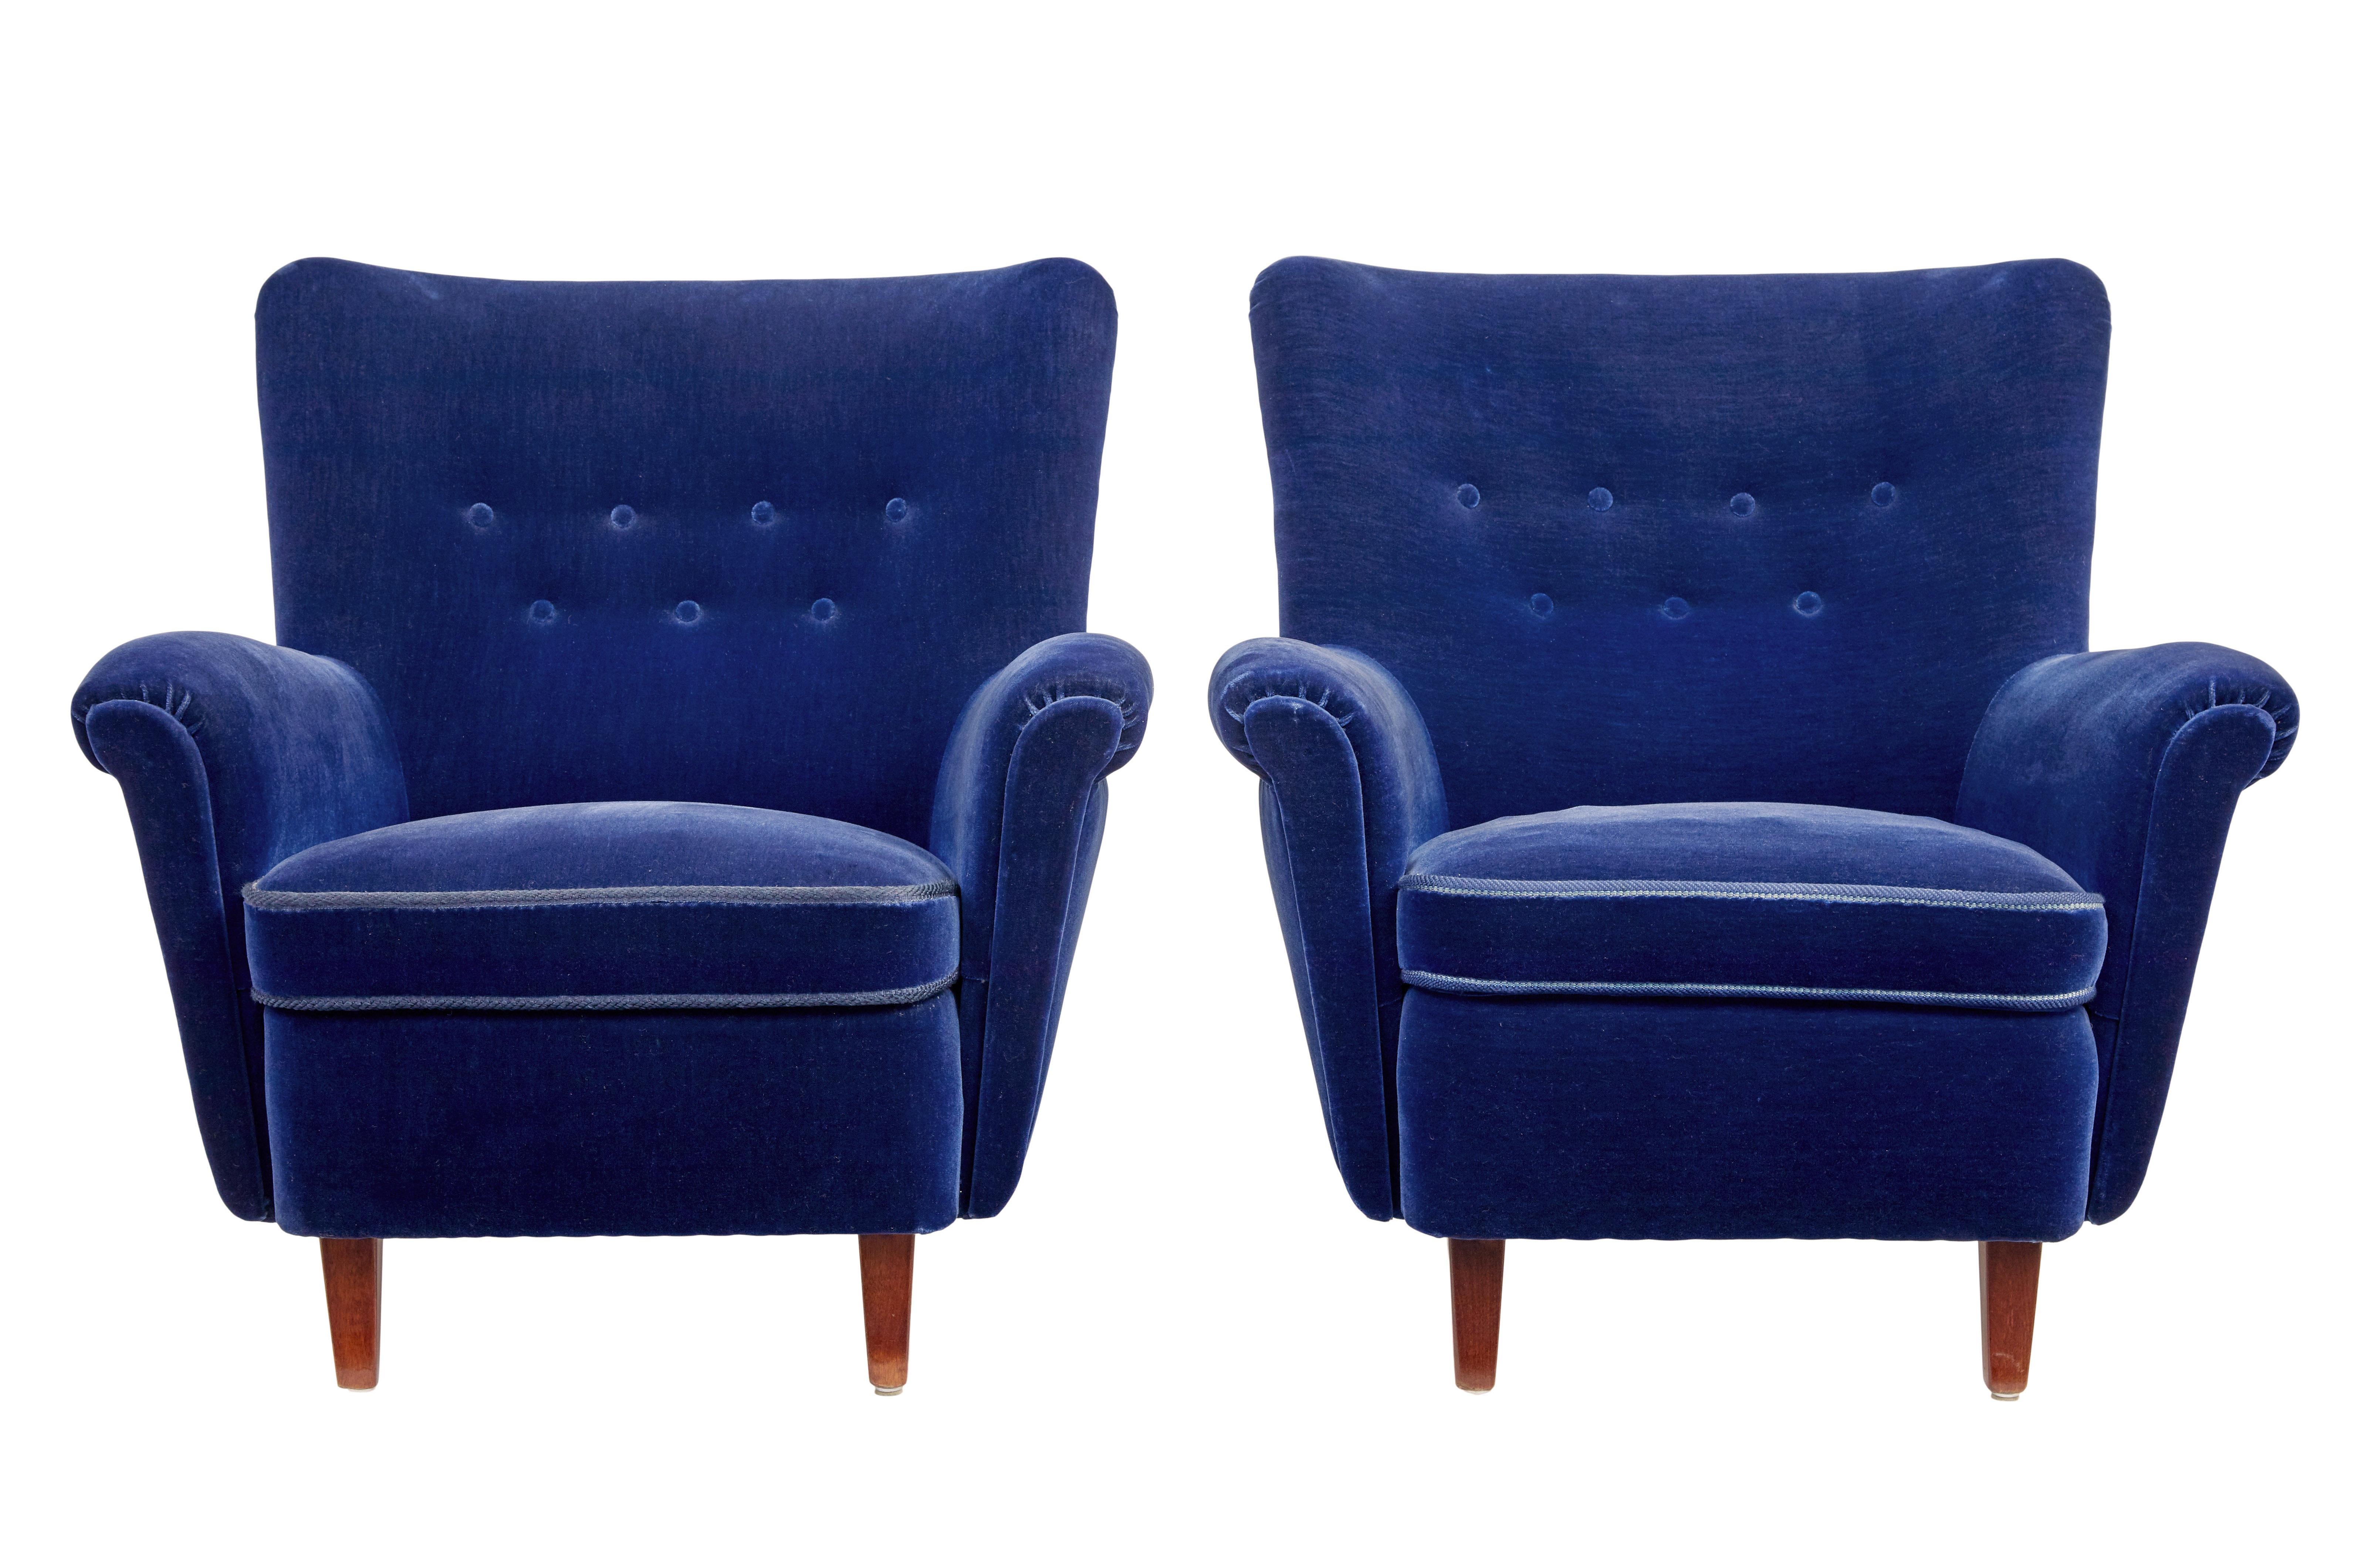 Wir freuen uns, diese atemberaubende 3-teilige Suite um 1950 zu präsentieren.

Die Suite besteht aus einem Paar Sesseln und einem passenden Sofa.  Reich gepolstert mit einem tiefblauen Veloursstoff.

2-Sitzer-Sofa mit gepolsterter Rückenlehne und